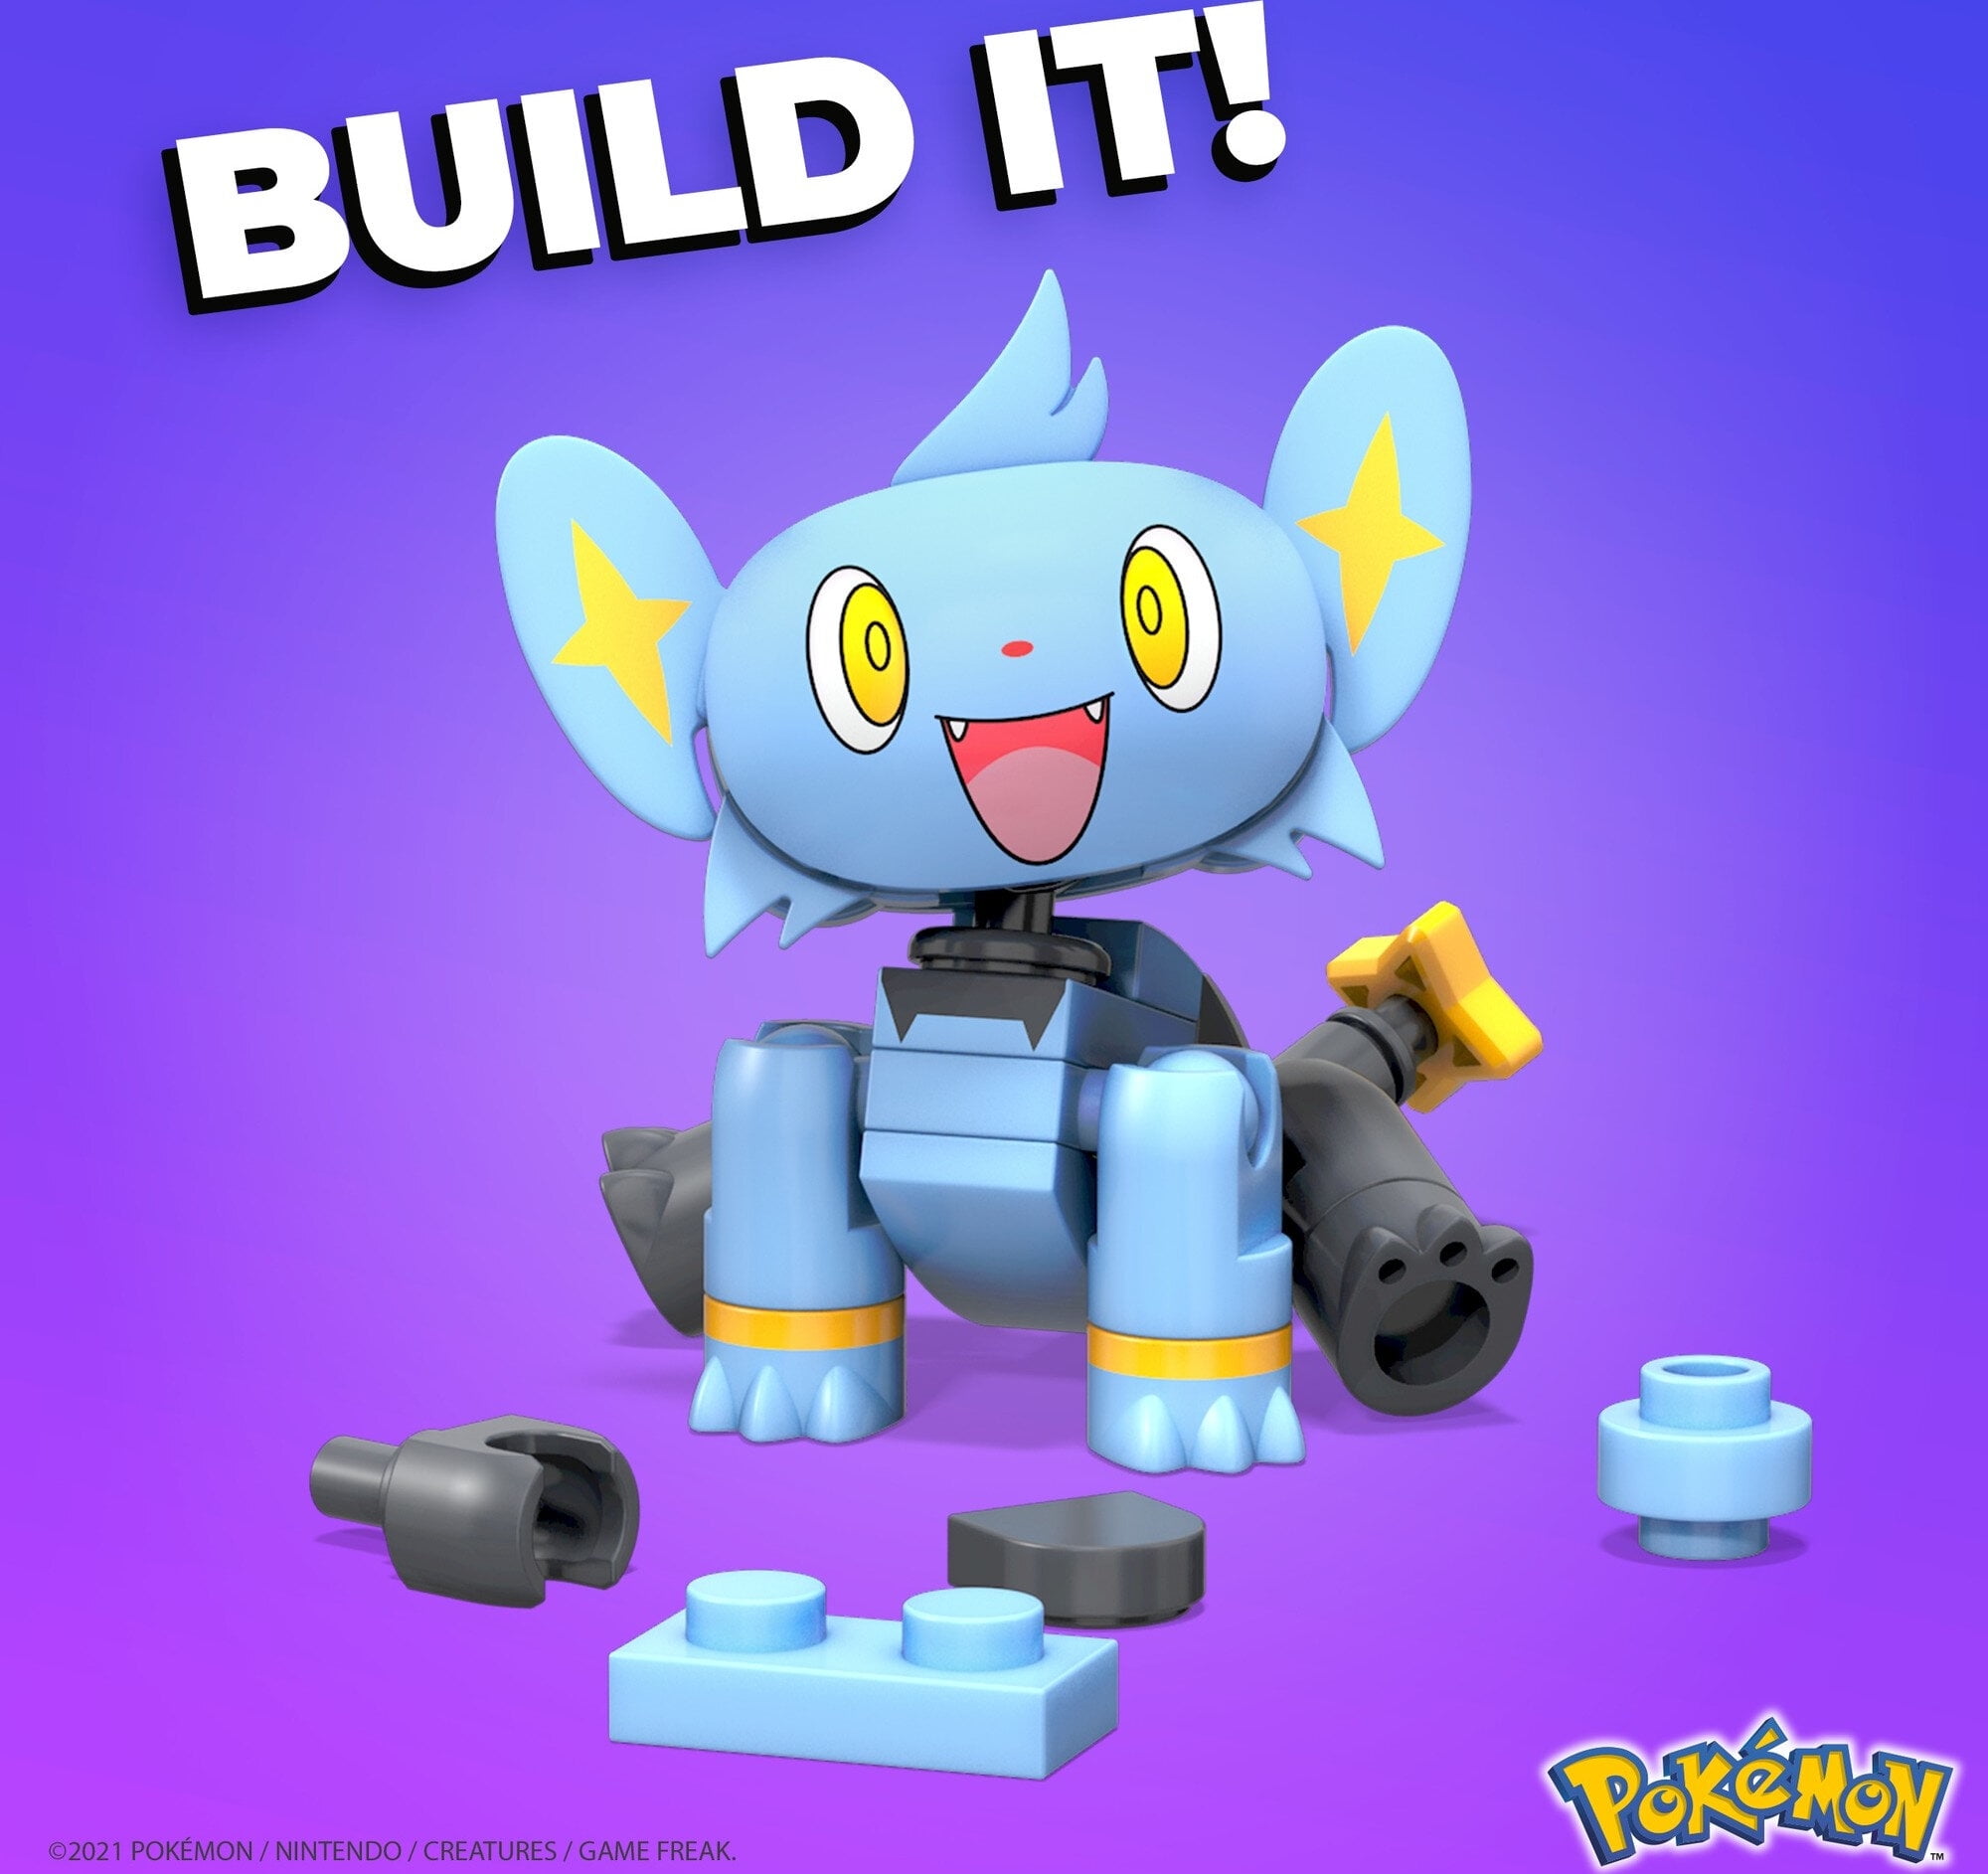 LEGO Rotom Pokémon 17 Peças Especiais - Presente Brinquedo 6+